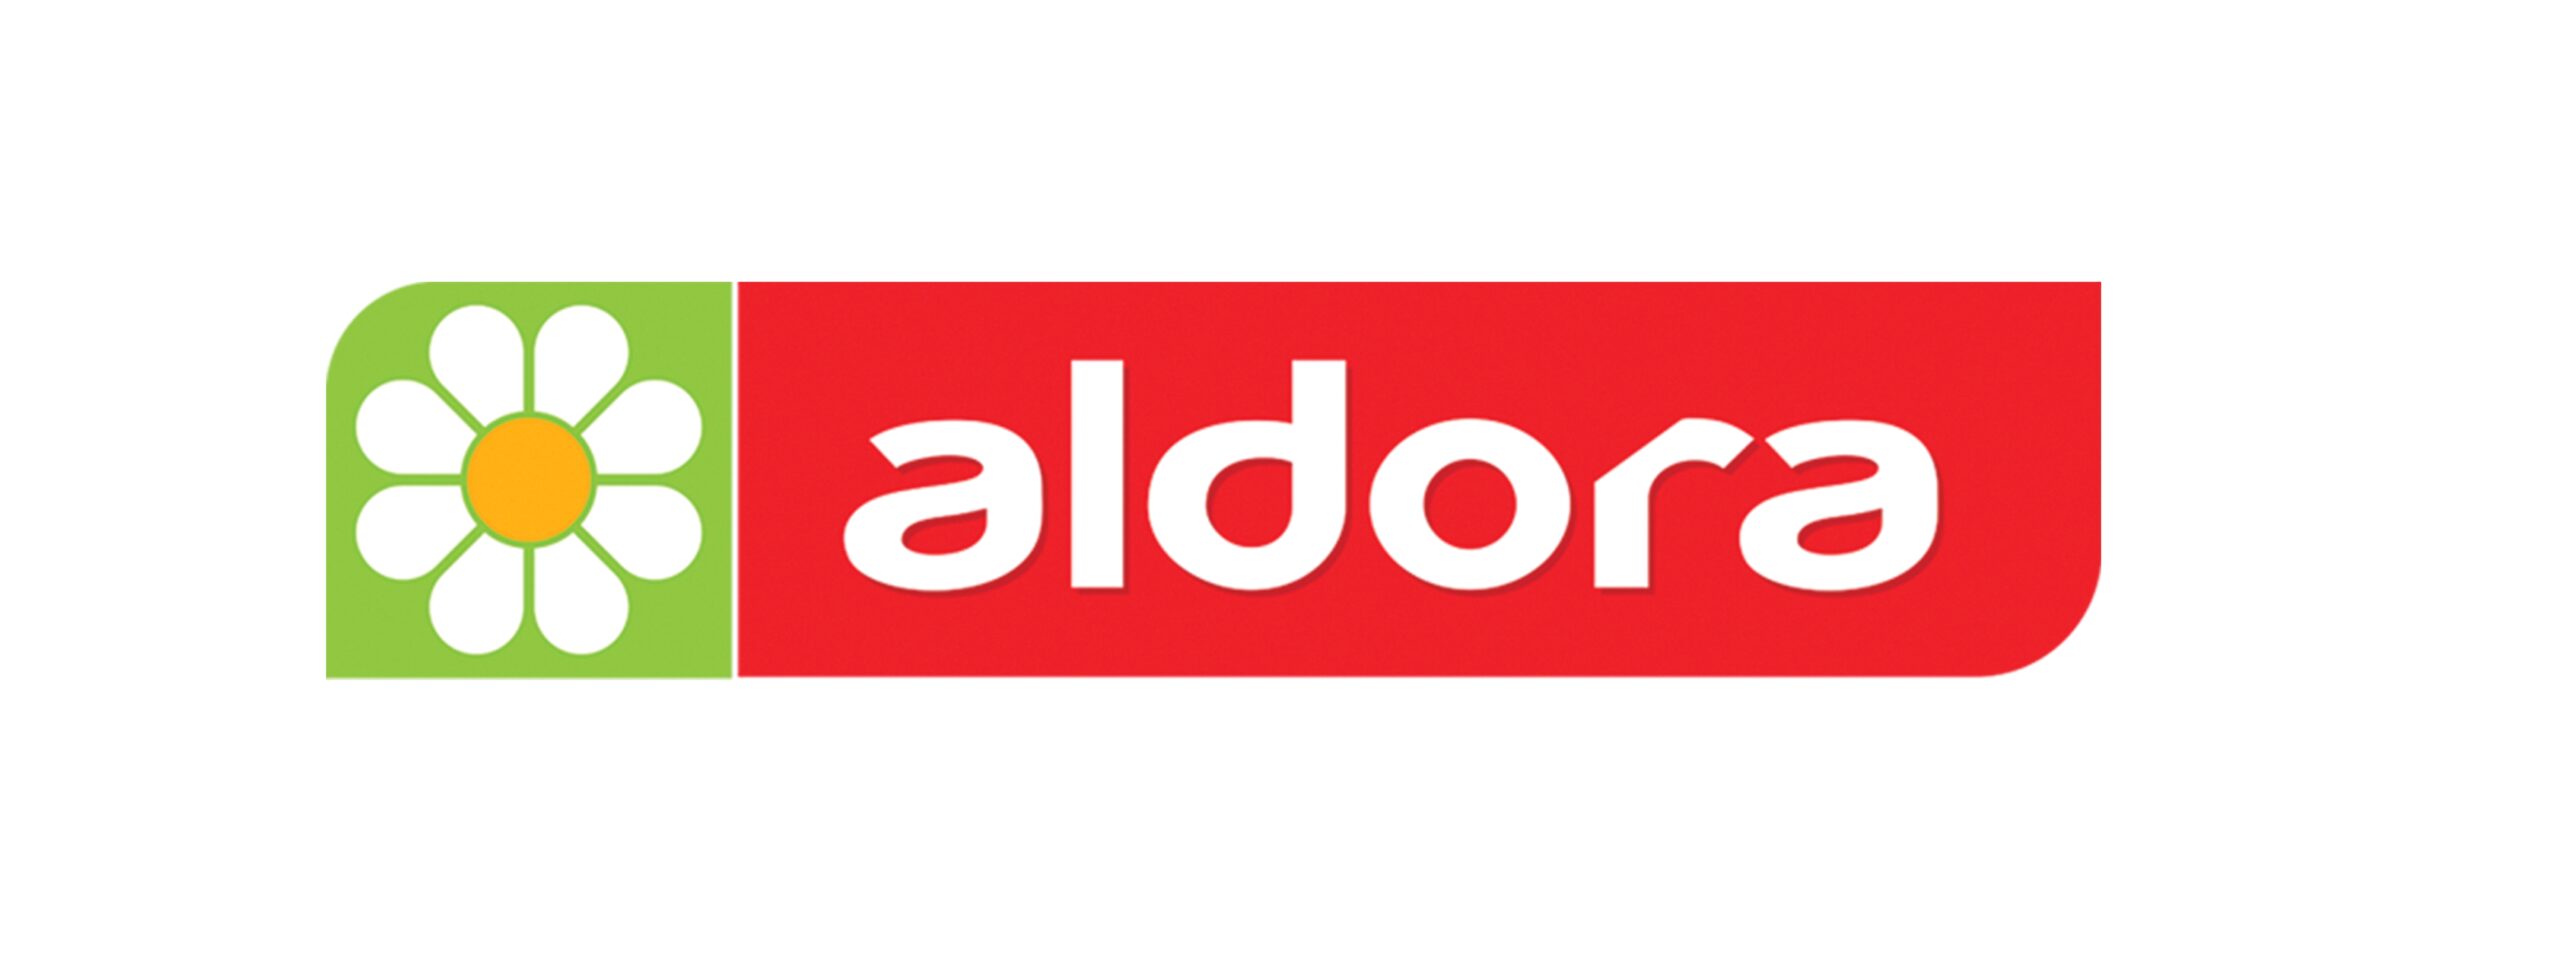 Aldora1